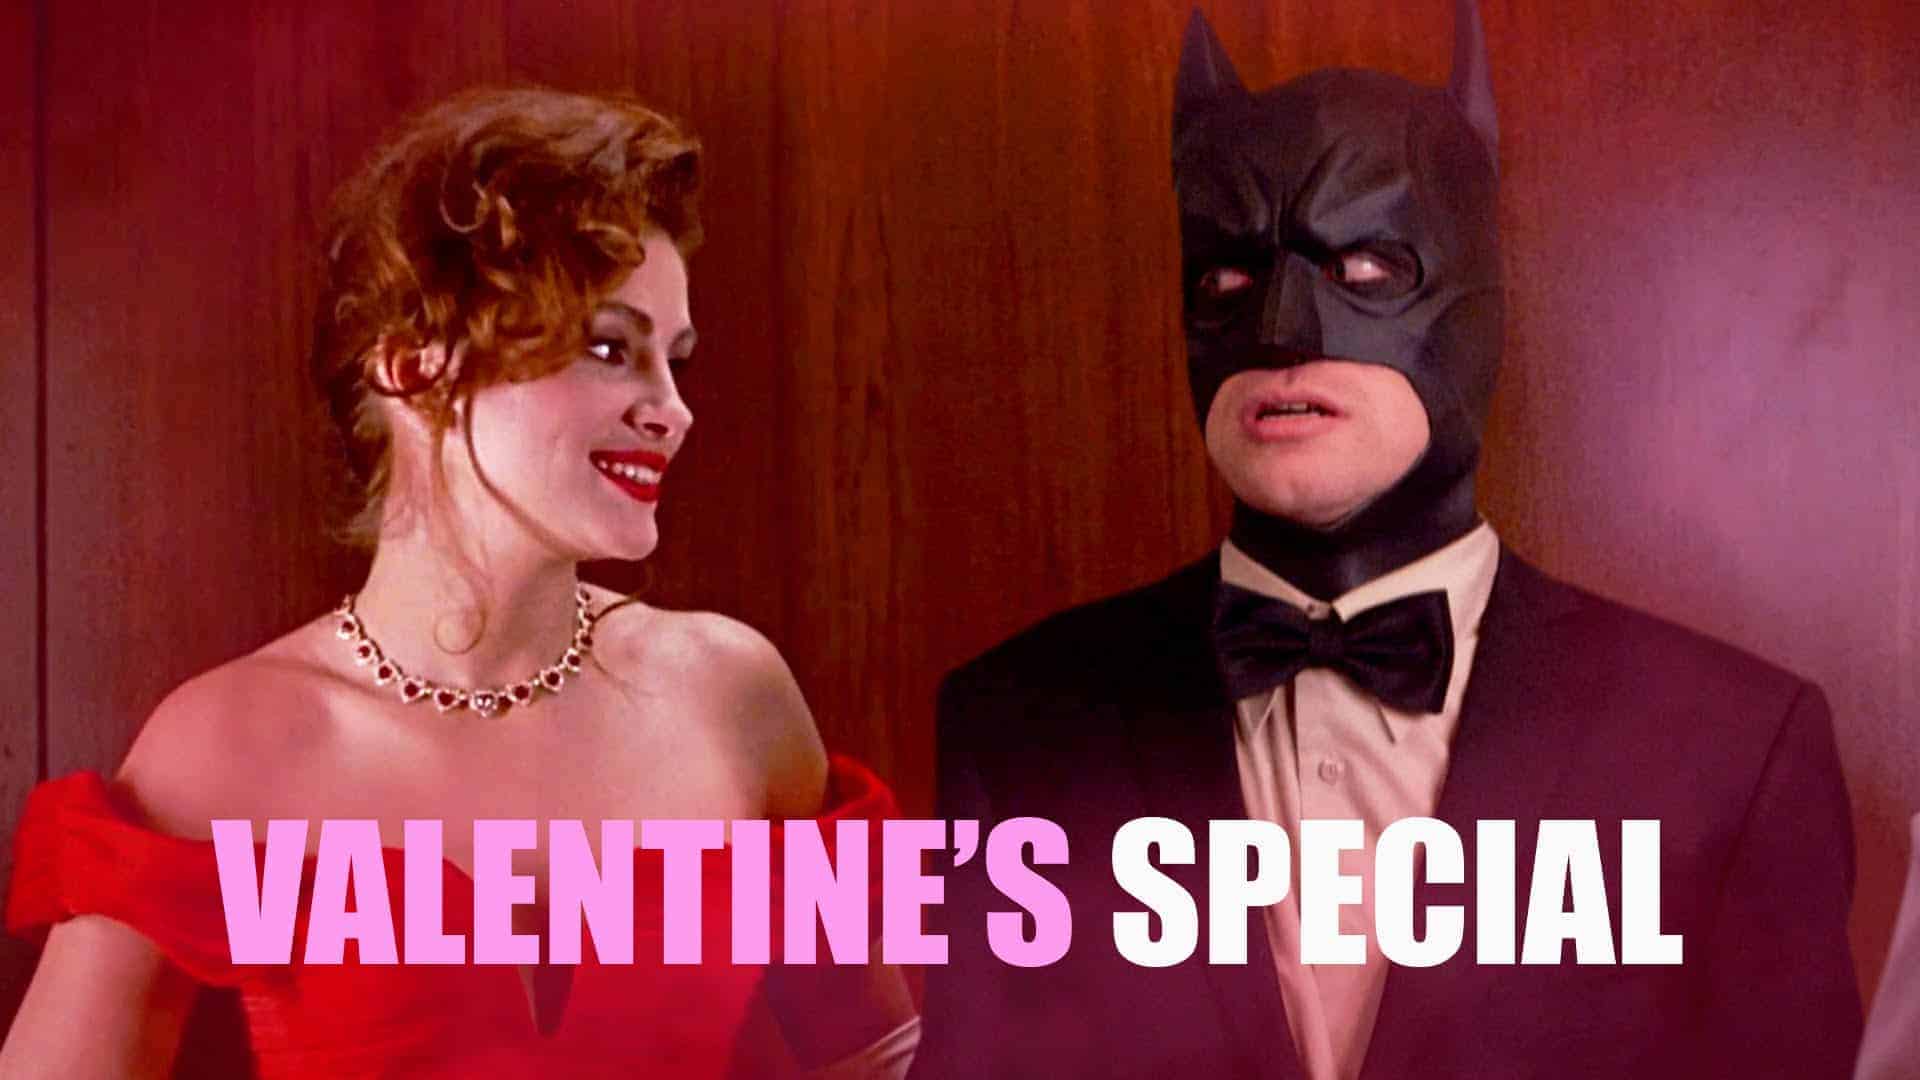 Oferta walentynkowa: Batman w filmach romantycznych